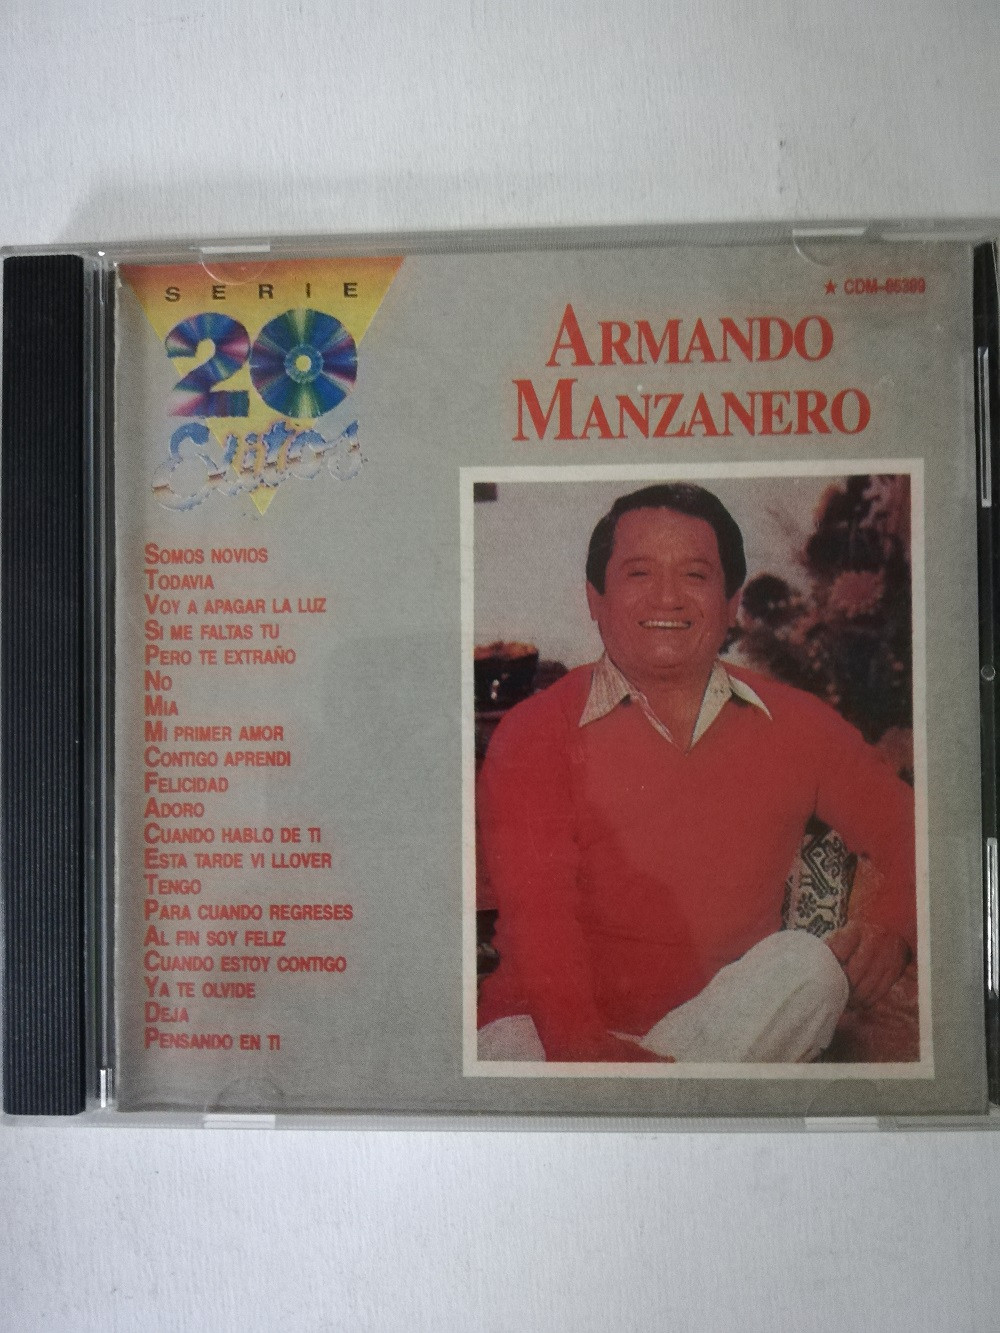 Imagen CD ARMANDO MANZANERO - SERIE 20 EXITOS 1